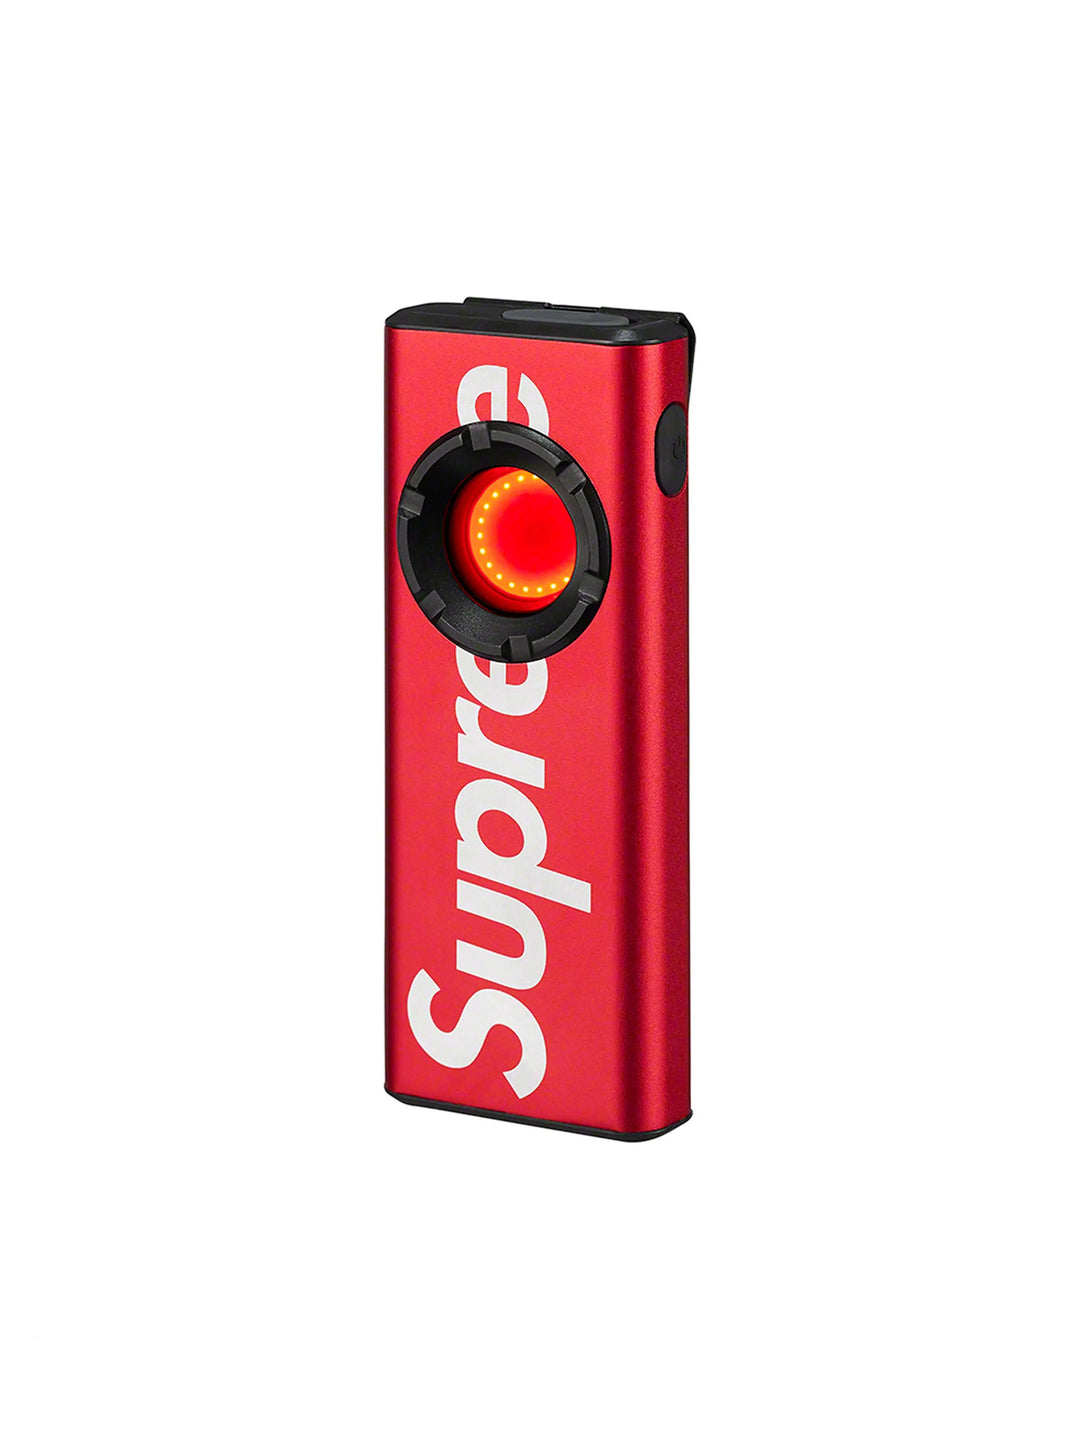 Supreme Nebo Slim 1200 Pocket Light Red in Melbourne, Australia - Prior